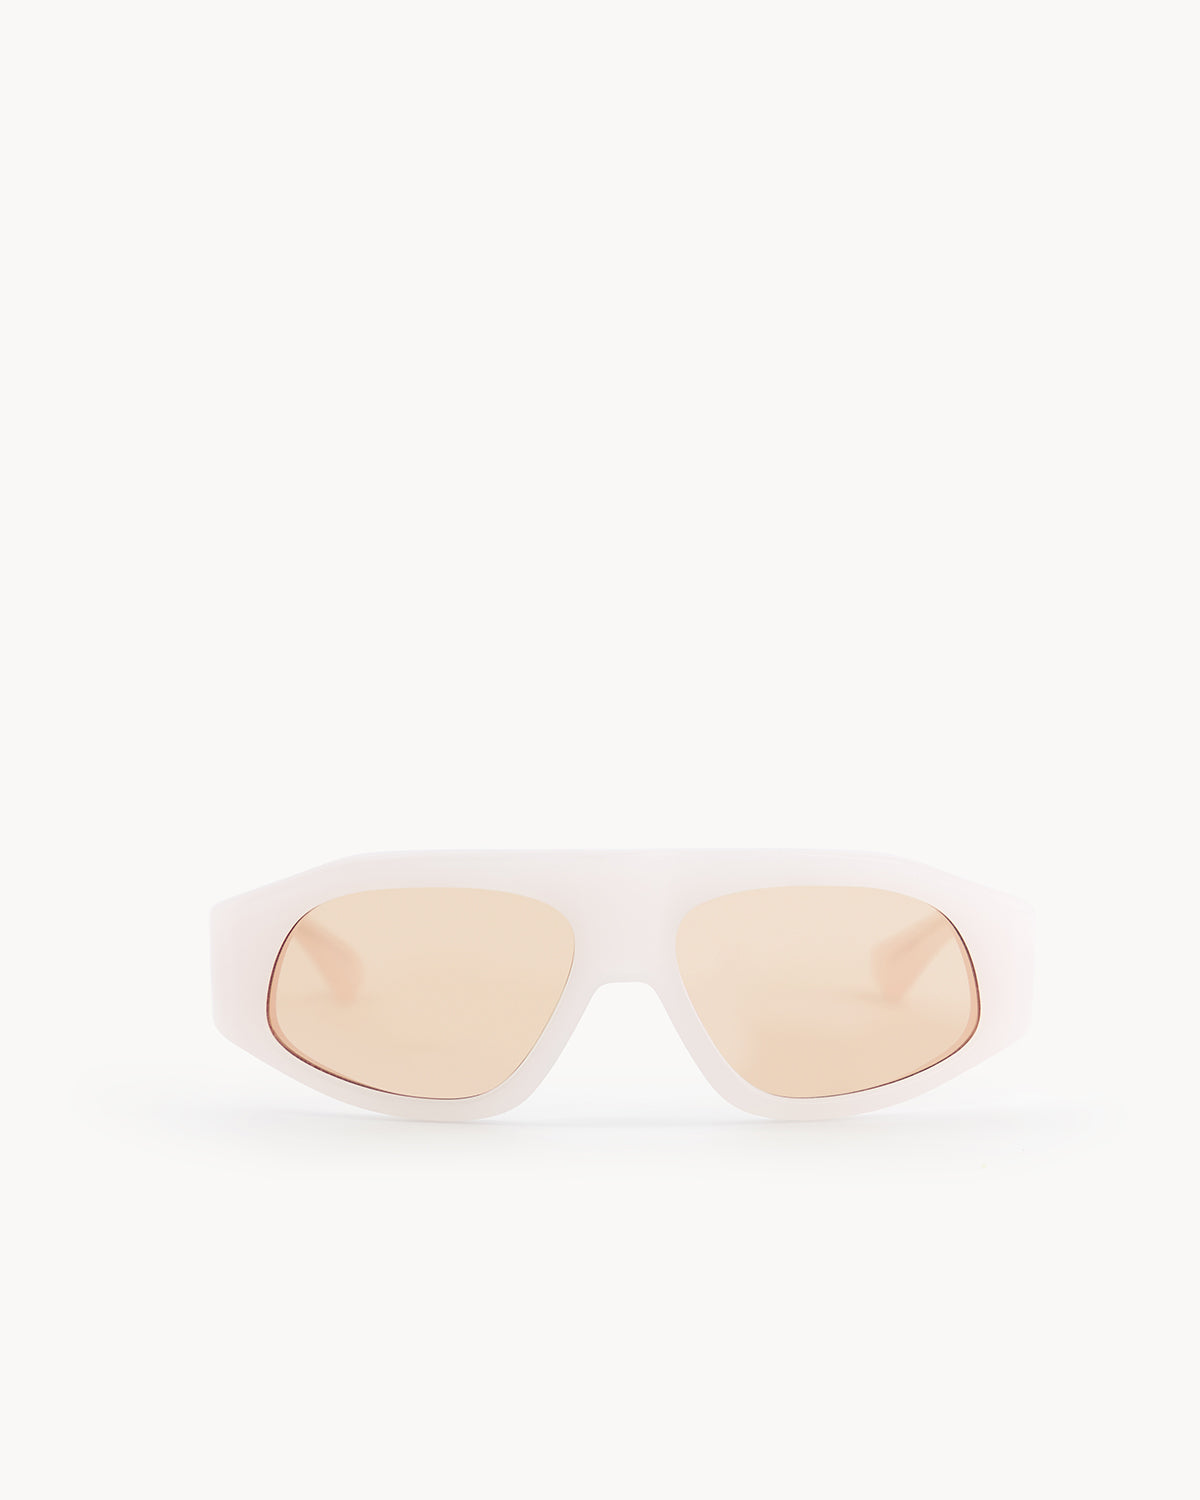 Port Tanger Irfan Sunglasses in Lulua Acetate and Amber Lenses 1